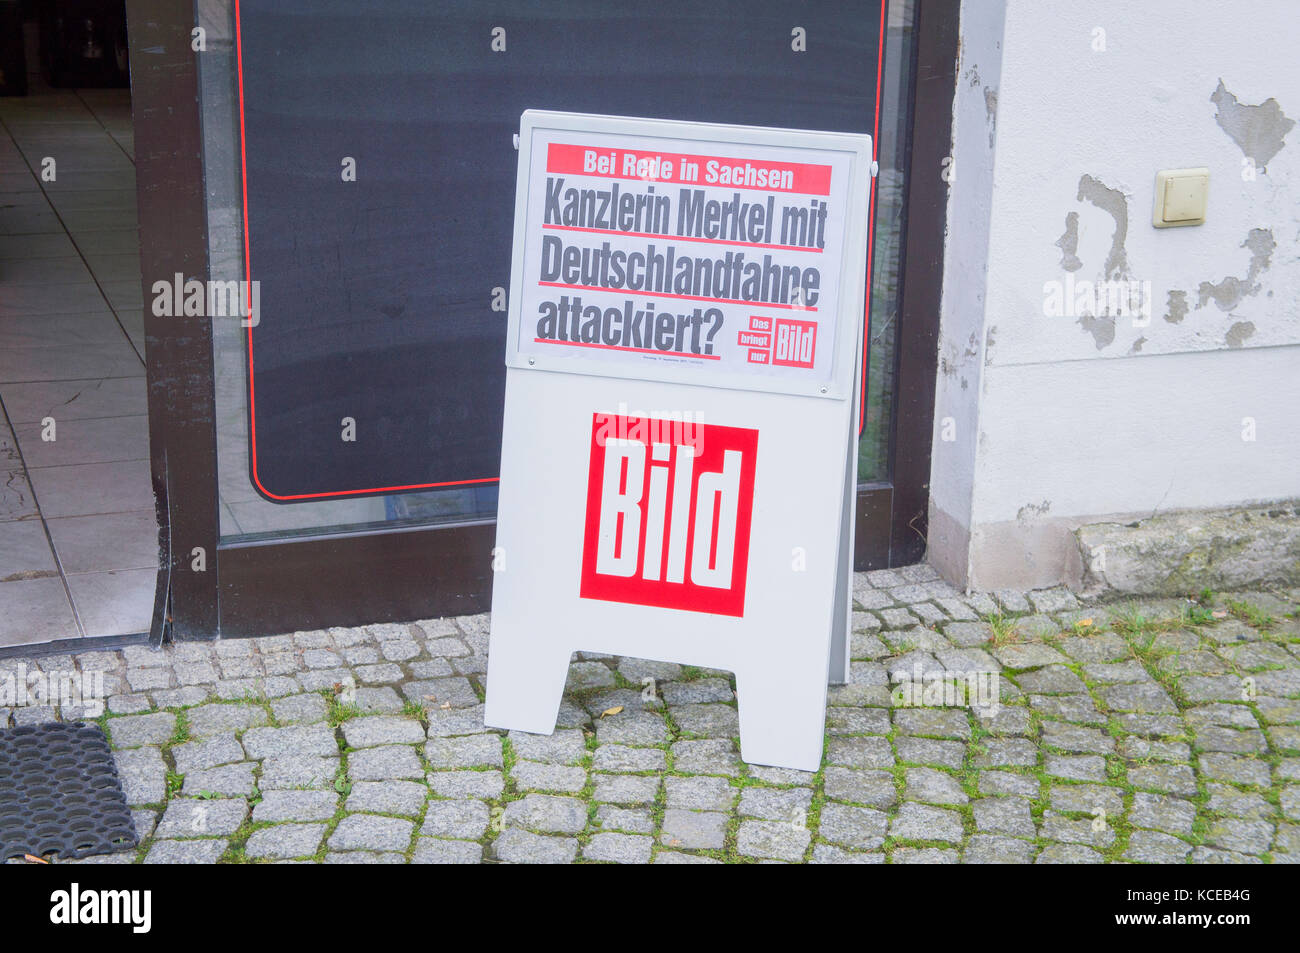 Periódico bild cartel con headline kanzlerin merkel mit deutschlandfahne attackiert? En kurort oybin, Alemania, 19 de septiembre de 2017. Foto de stock